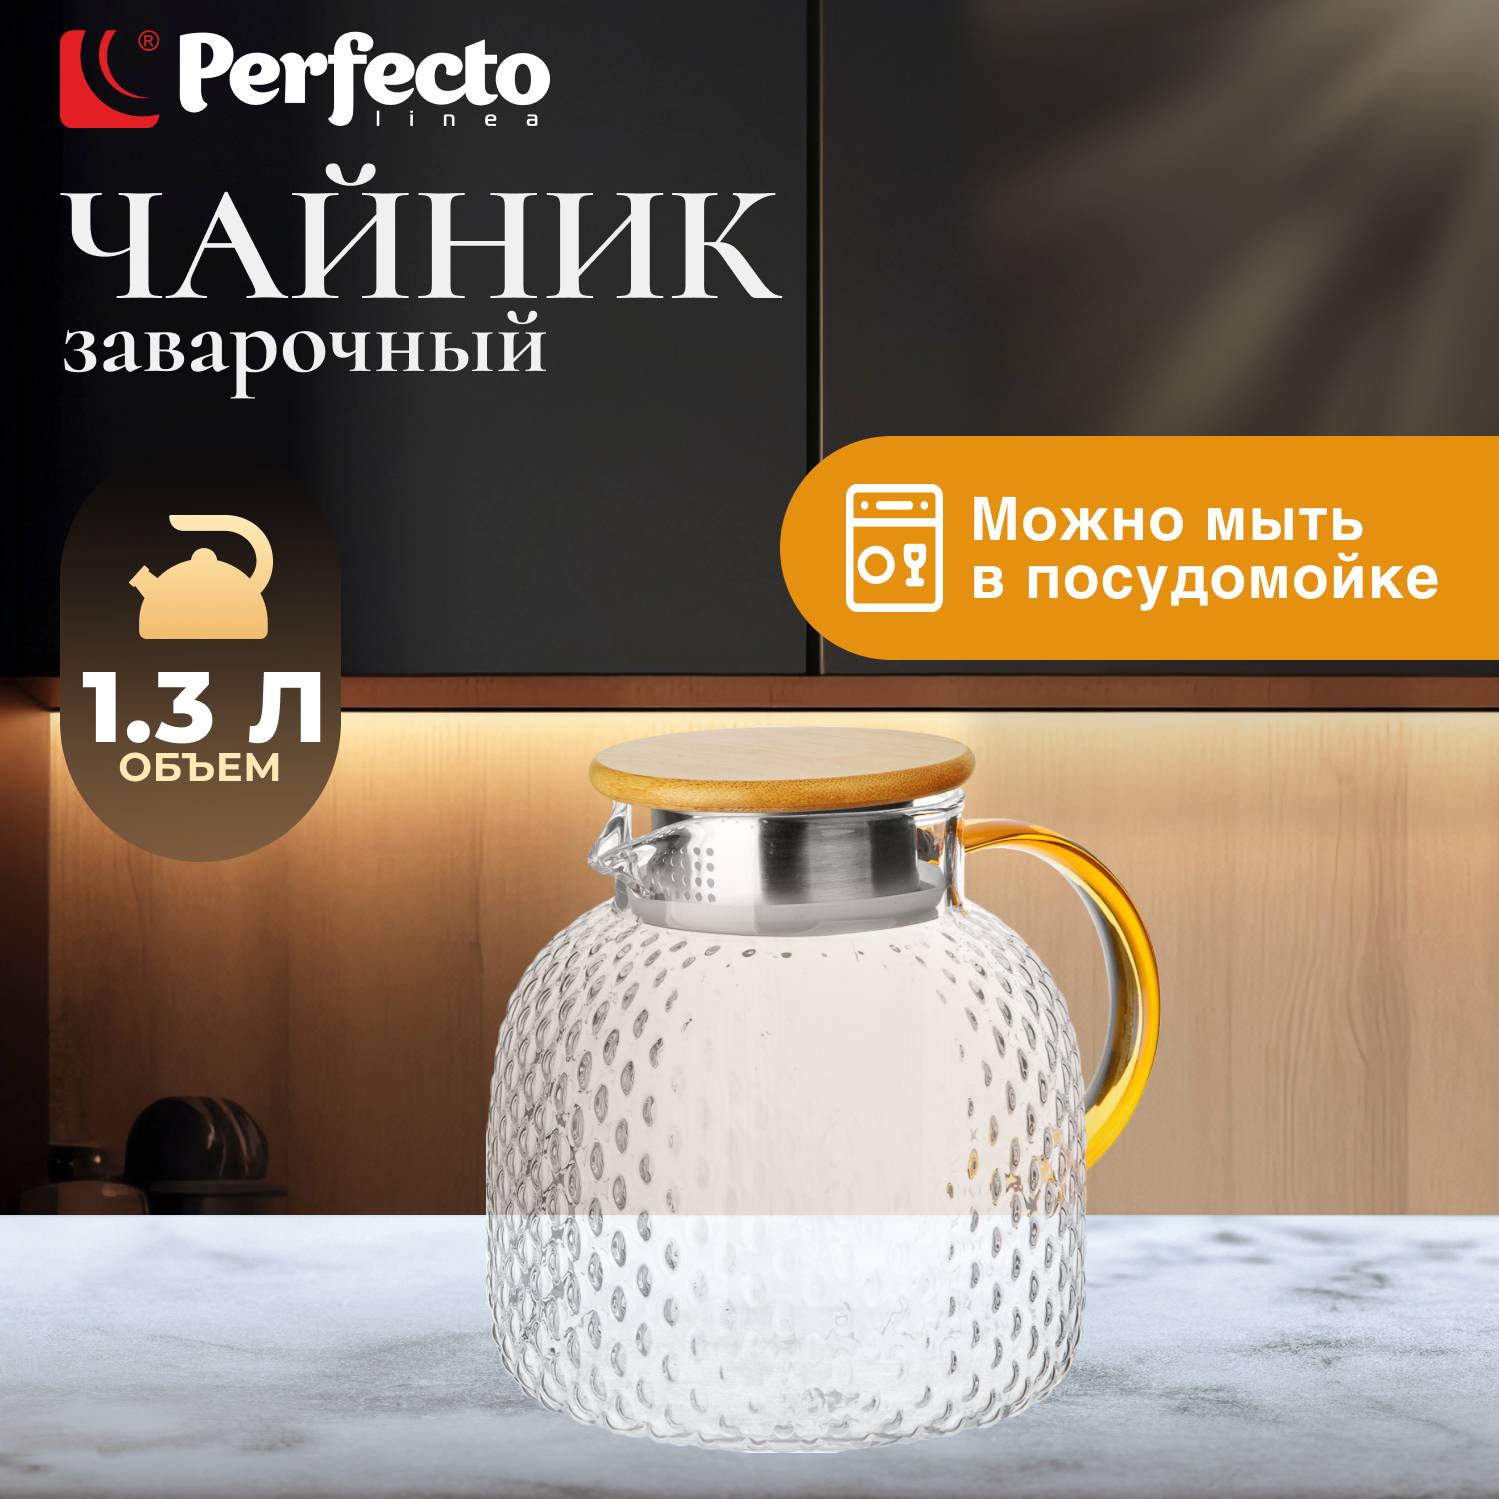 Заварочный чайник стеклянный PERFECTO LINEA Bamboo 13 л (38-130018)